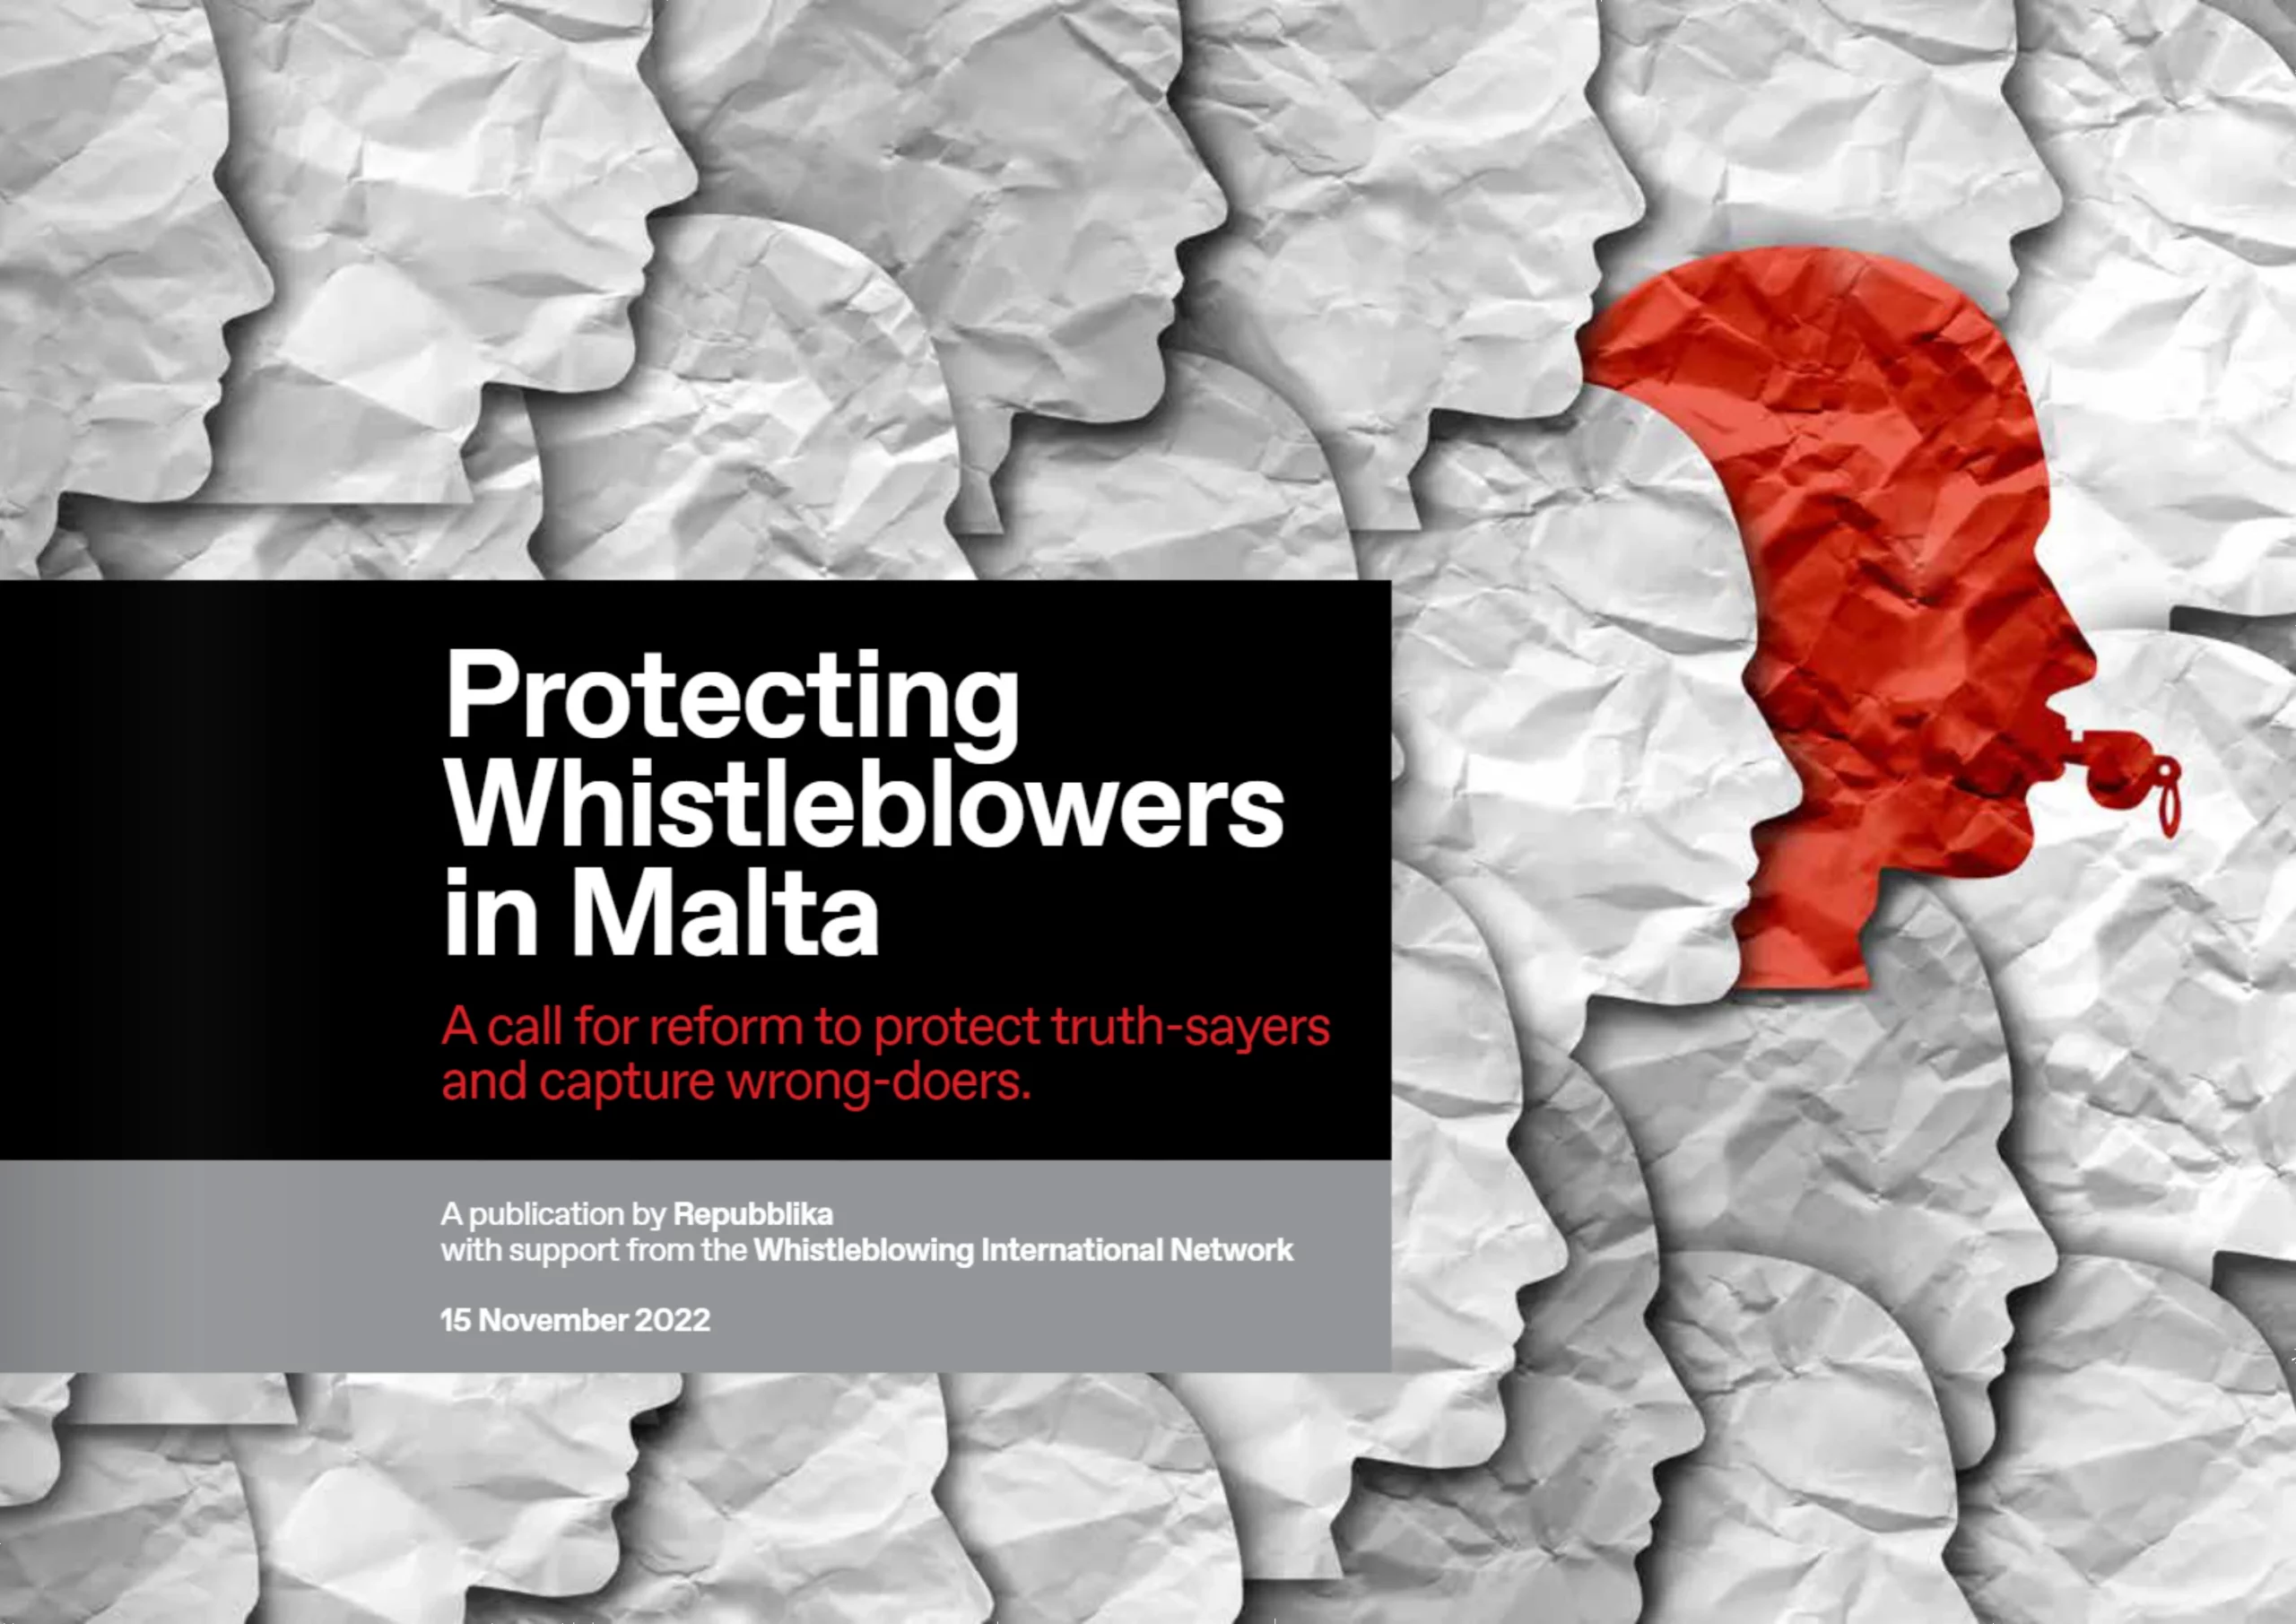 Nipproteġu l-Whistleblowers f'Malta